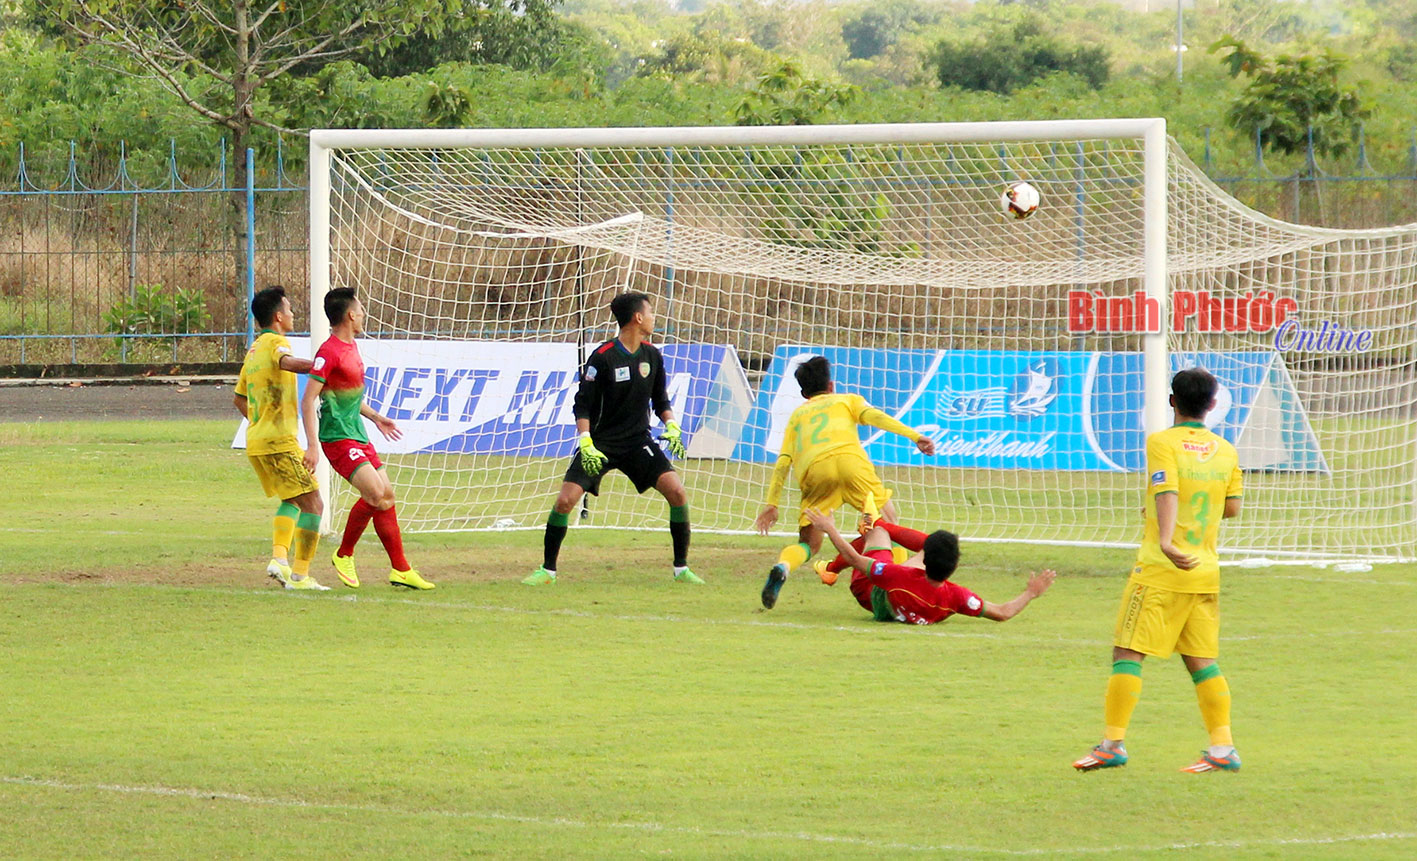 Phút 68 của trận đấu, cầu thủ Hồ Sỹ Giáp ghi bàn thắng thứ 2 lập cú đúp ấn định tỉ số chiến tháng 2-0